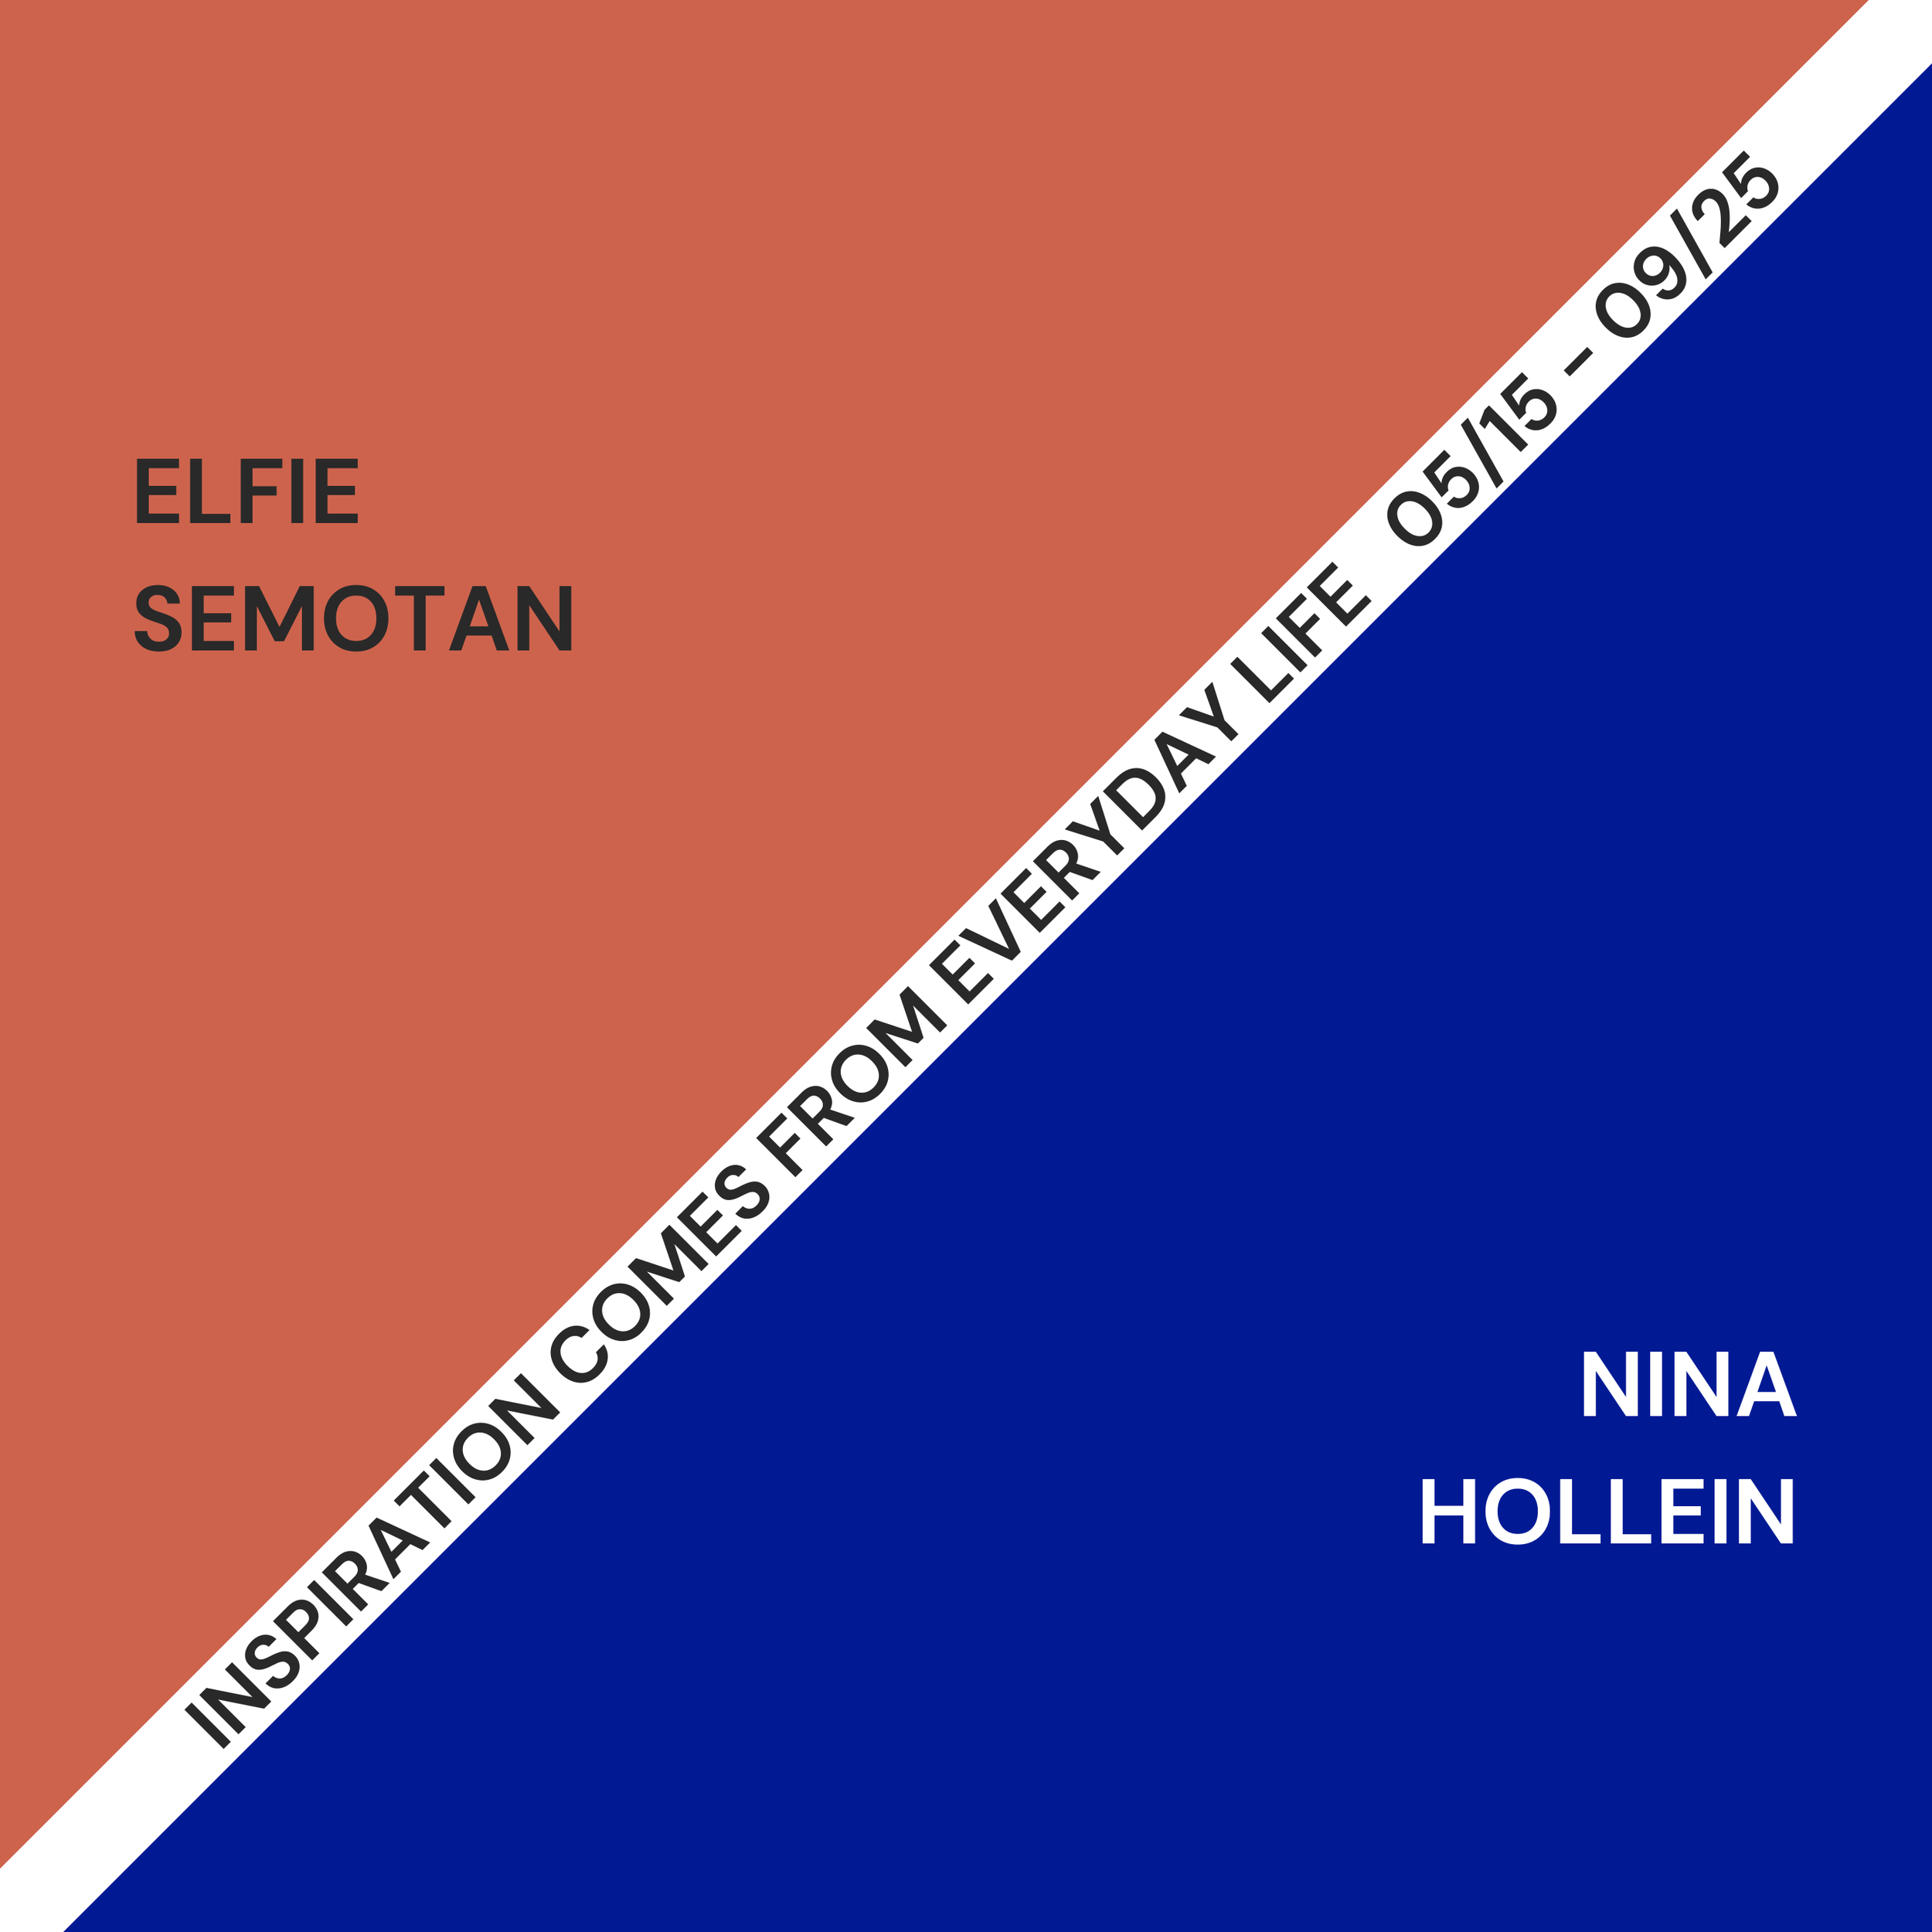 La inspiración viene de la vida cotidiana: Obras de Elfie Semotan y Nina Hollein